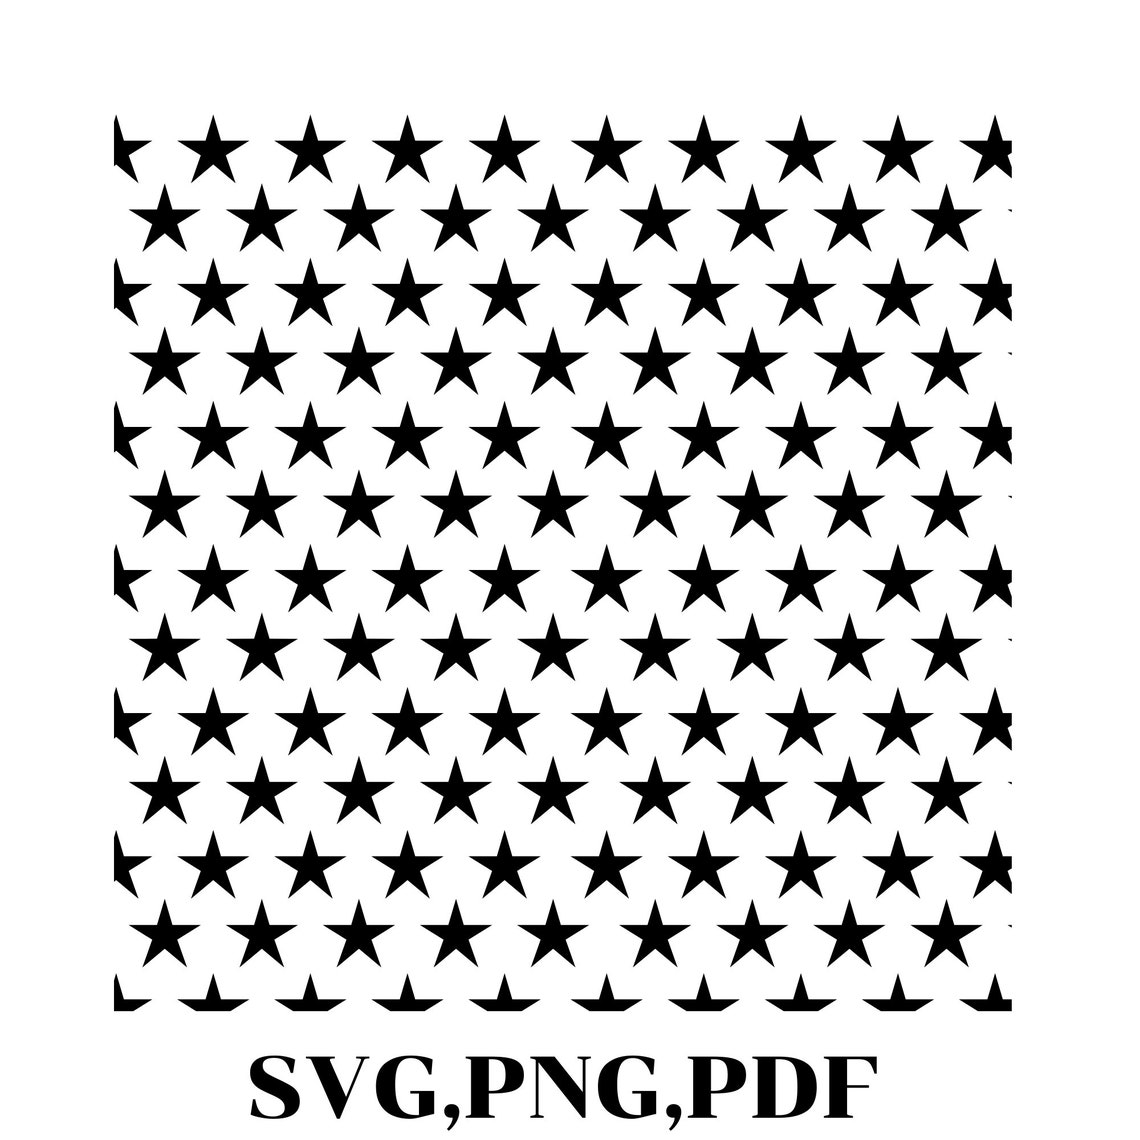 50-stars-svg-png-pdf-united-states-of-america-flag-stars-50-etsy